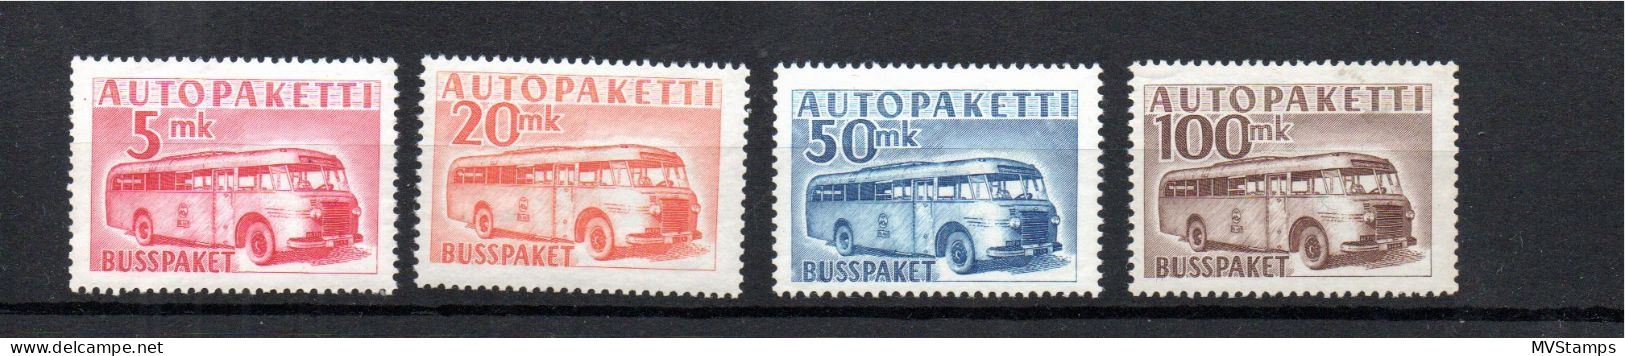 Finnland 1949 Satz APM 6/9 Auto-Paketmarken/Autopaketti Postfrisch - Pacchi Tramite Autobus